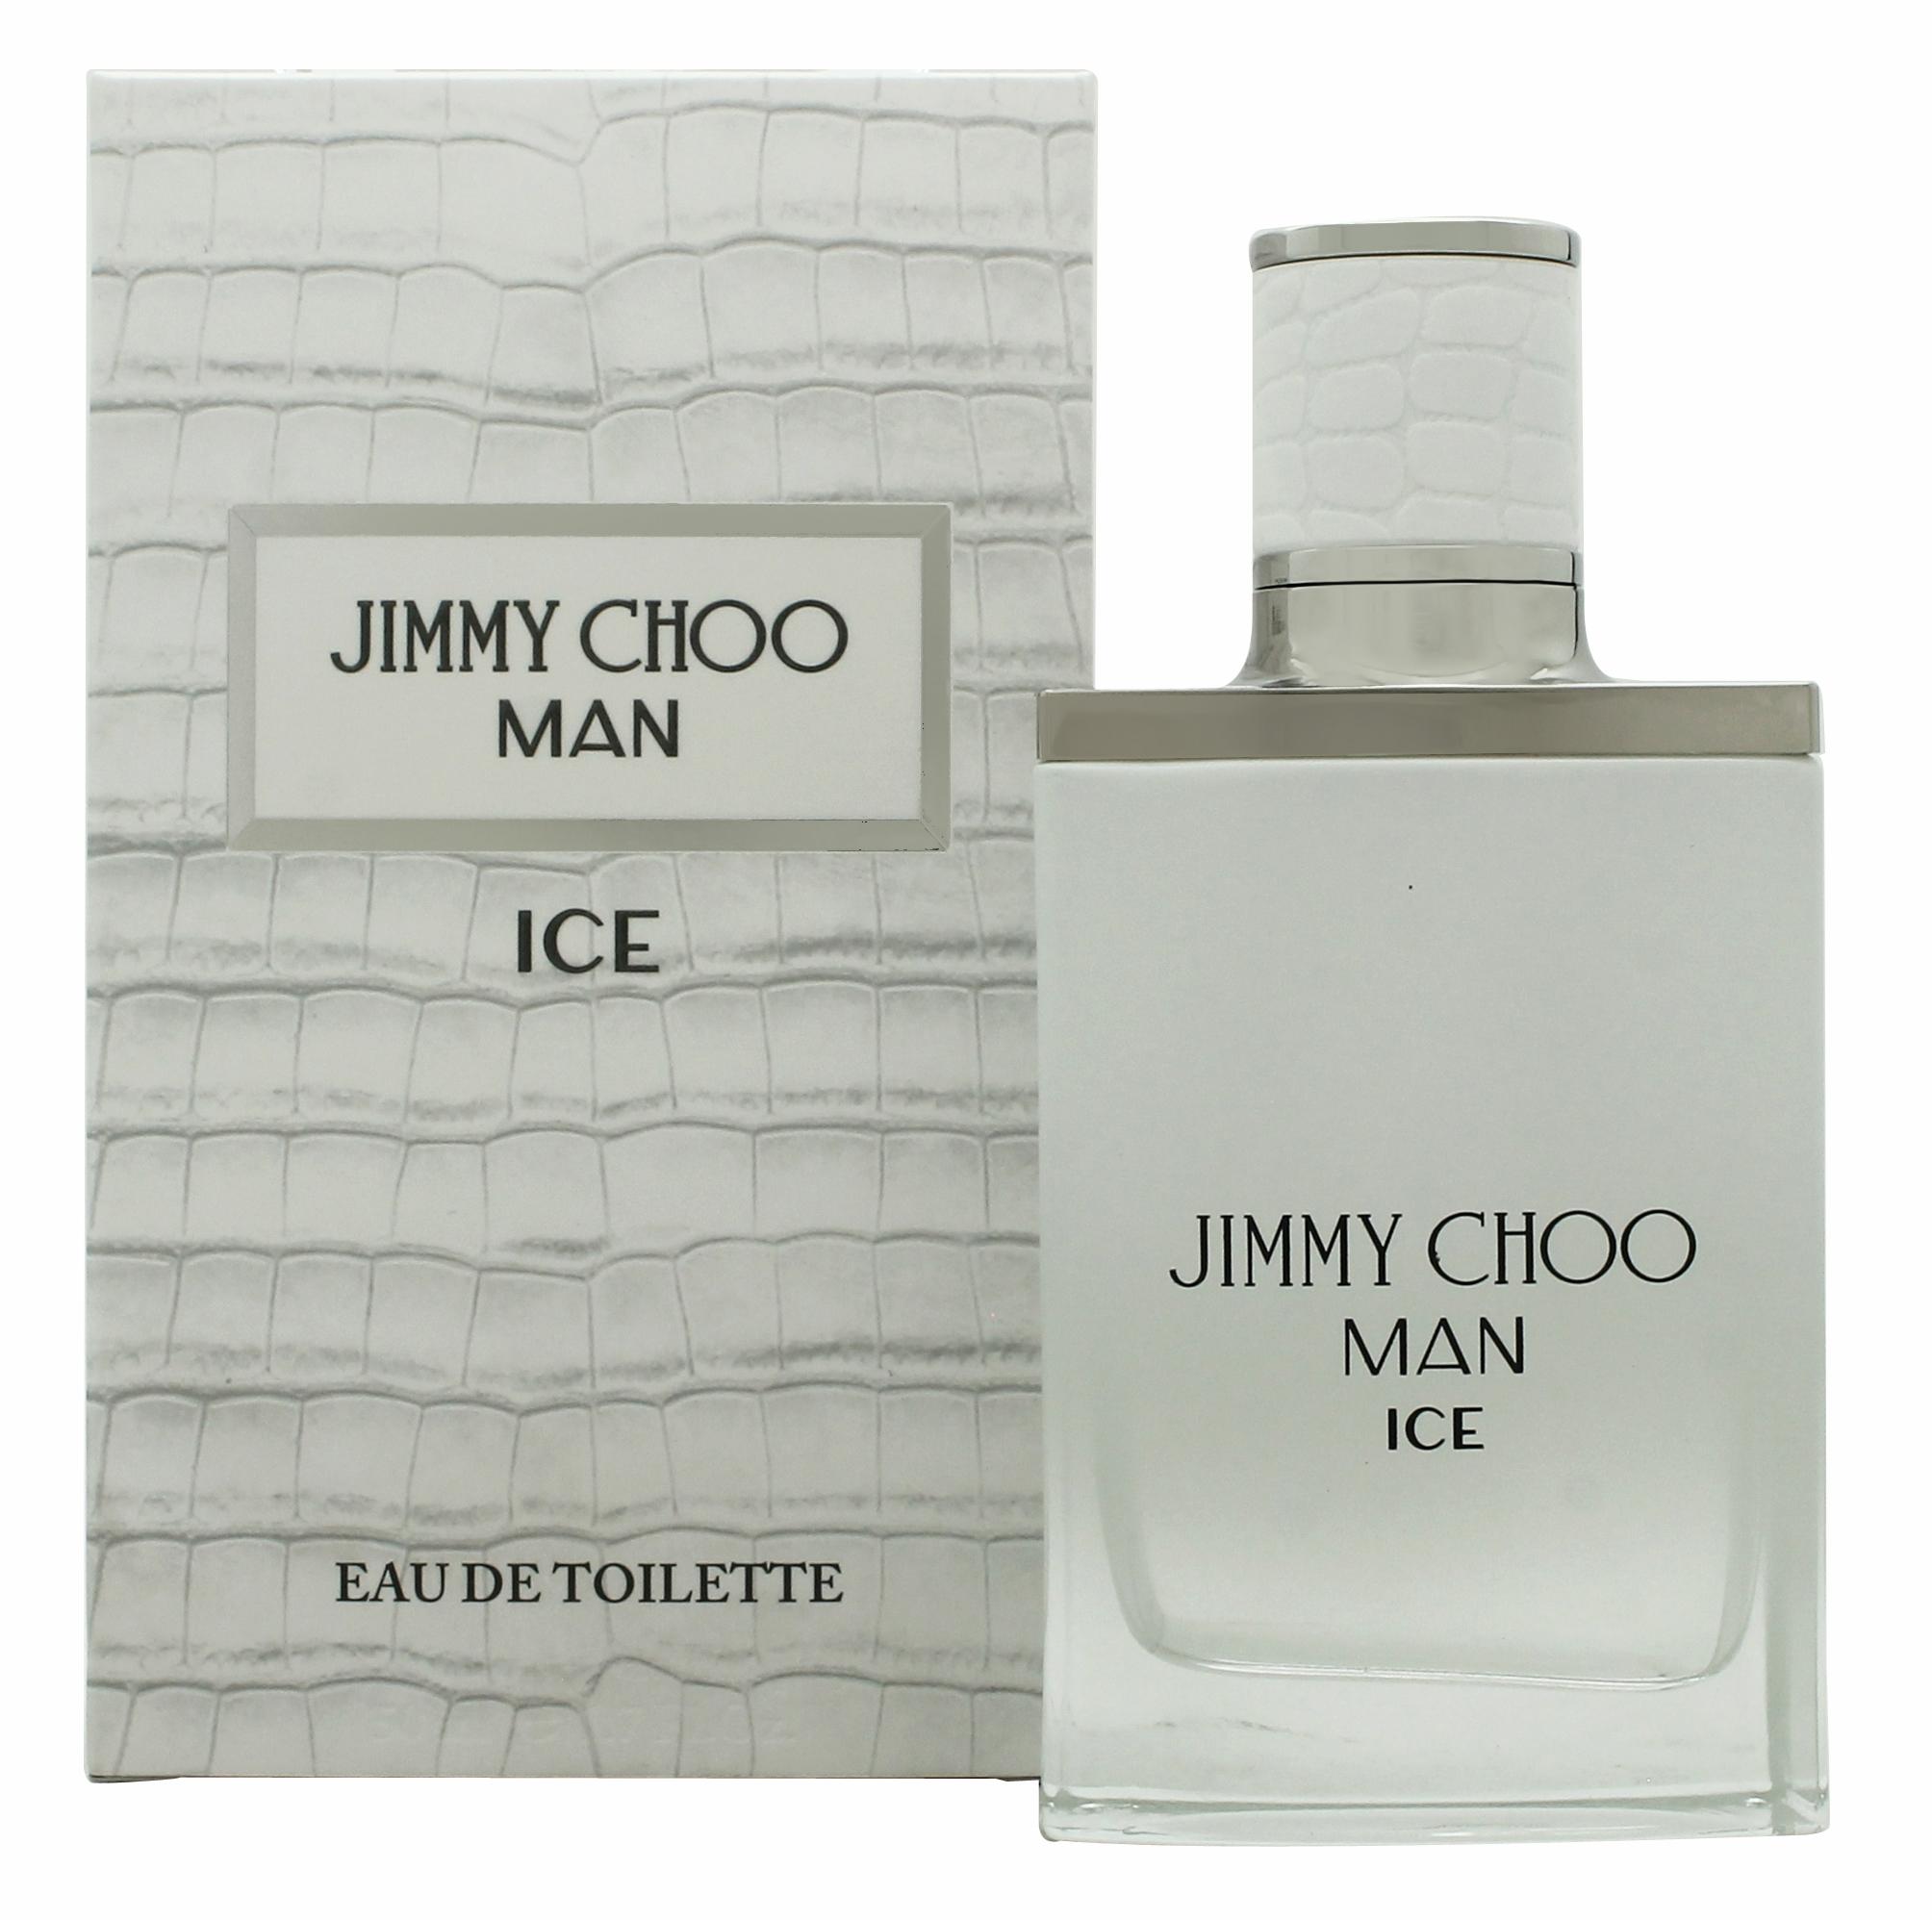 Jimmy Choo Man Ice Eau de Toilette 50ml Spray